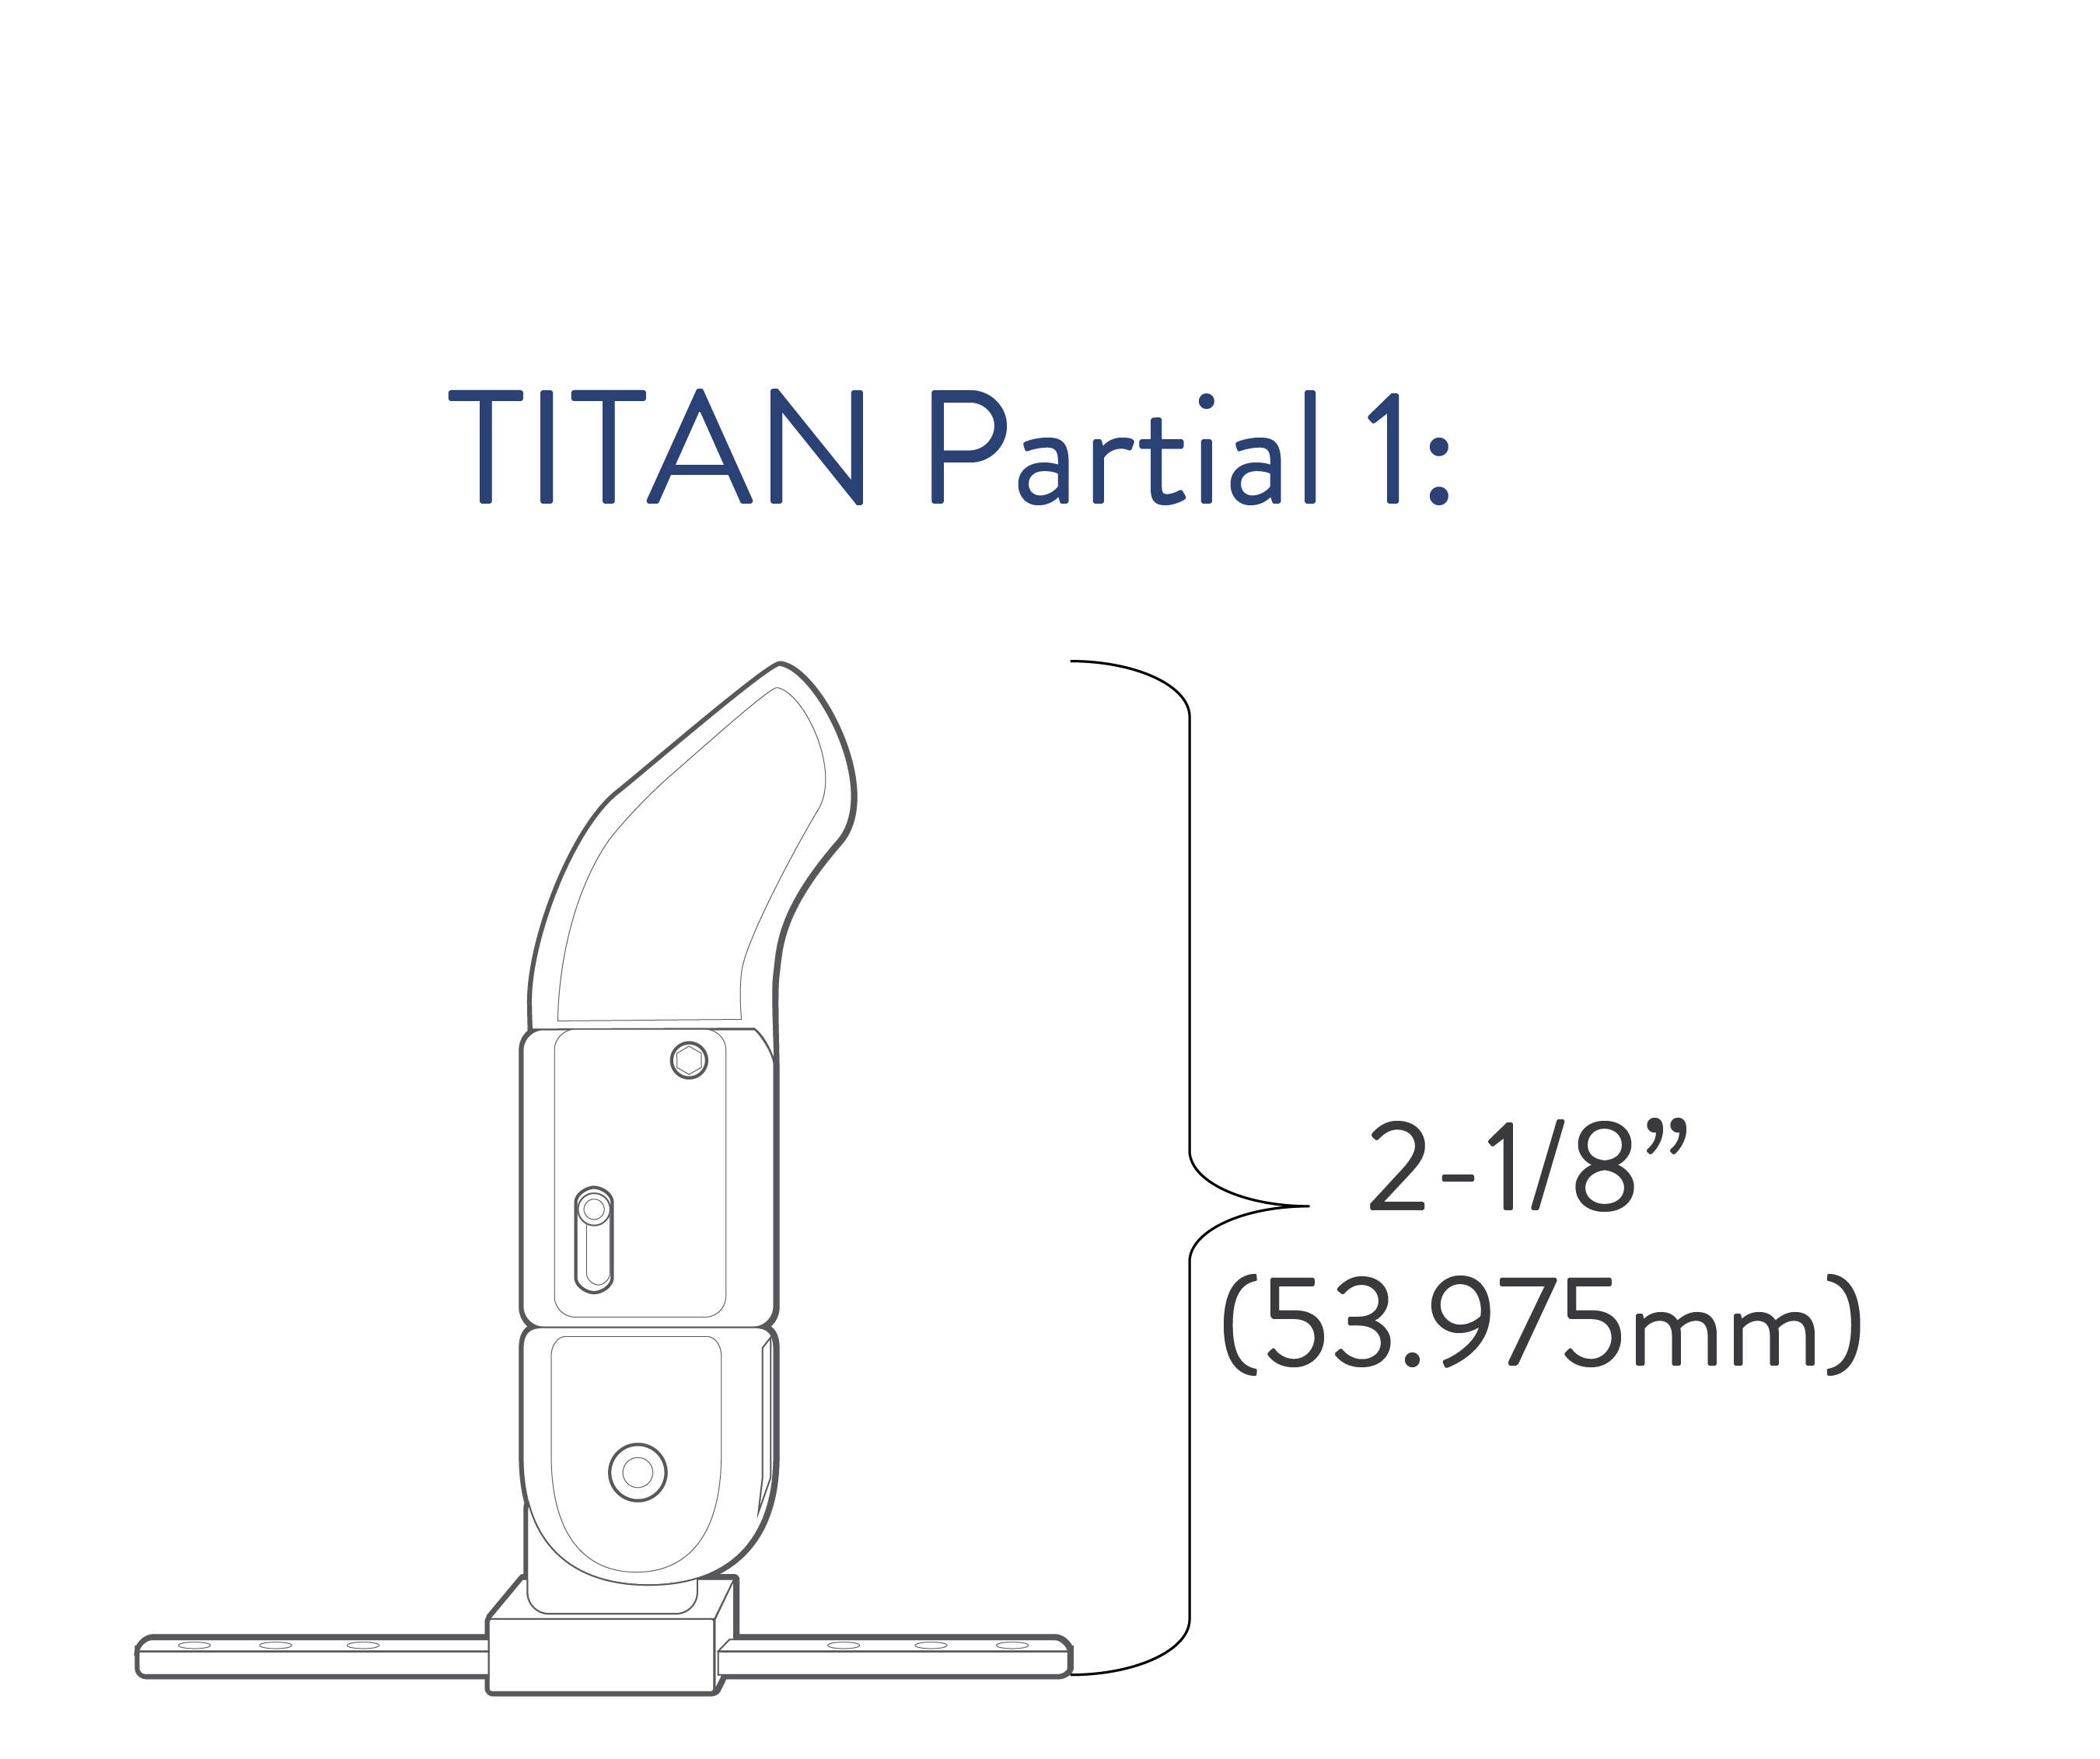 Titan Partial Small